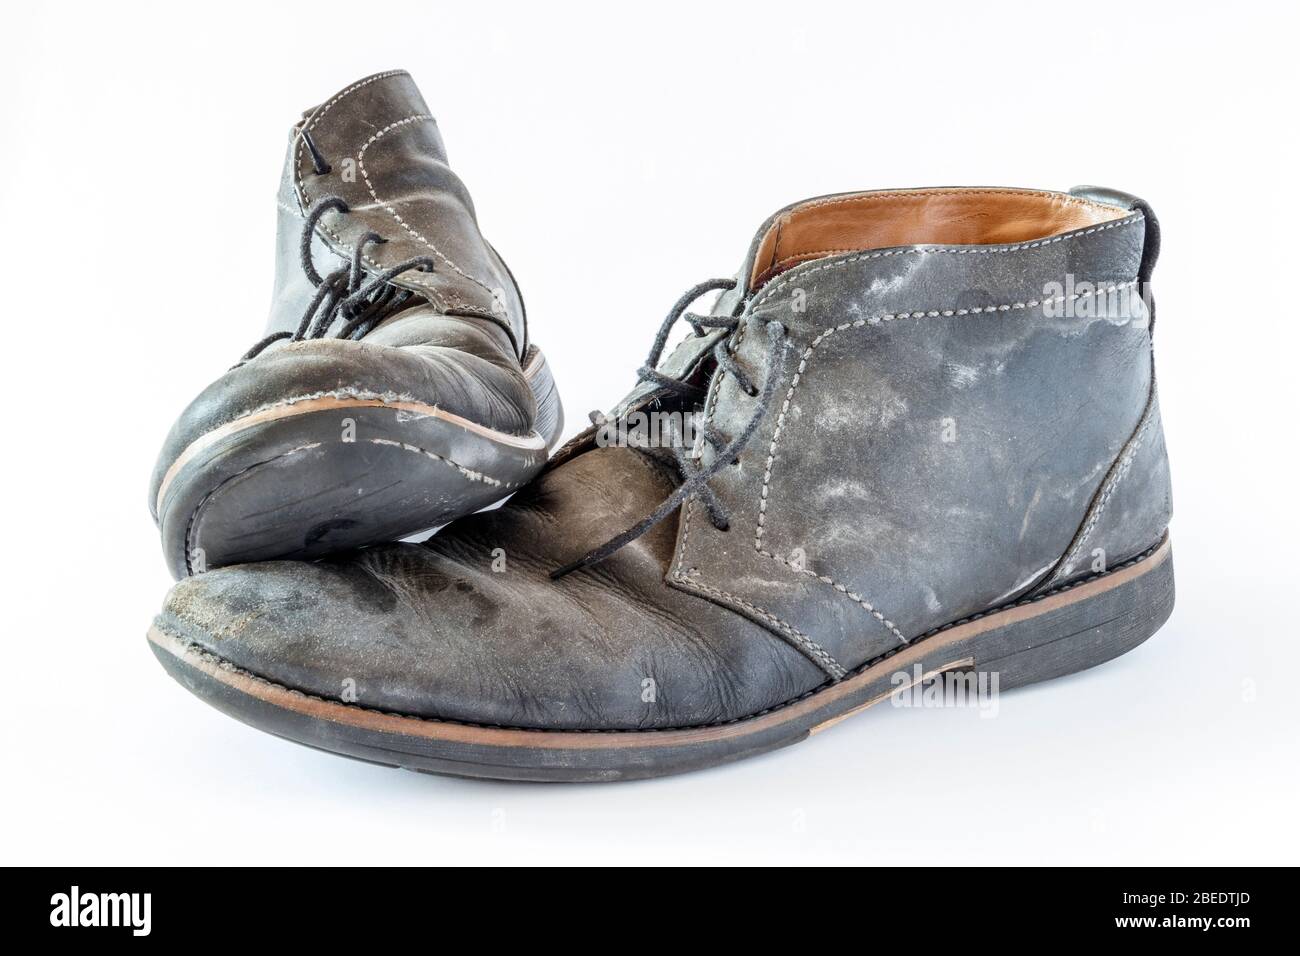 Un paio di scarpe in pelle nera sporca e logore isolate su uno sfondo bianco Foto Stock